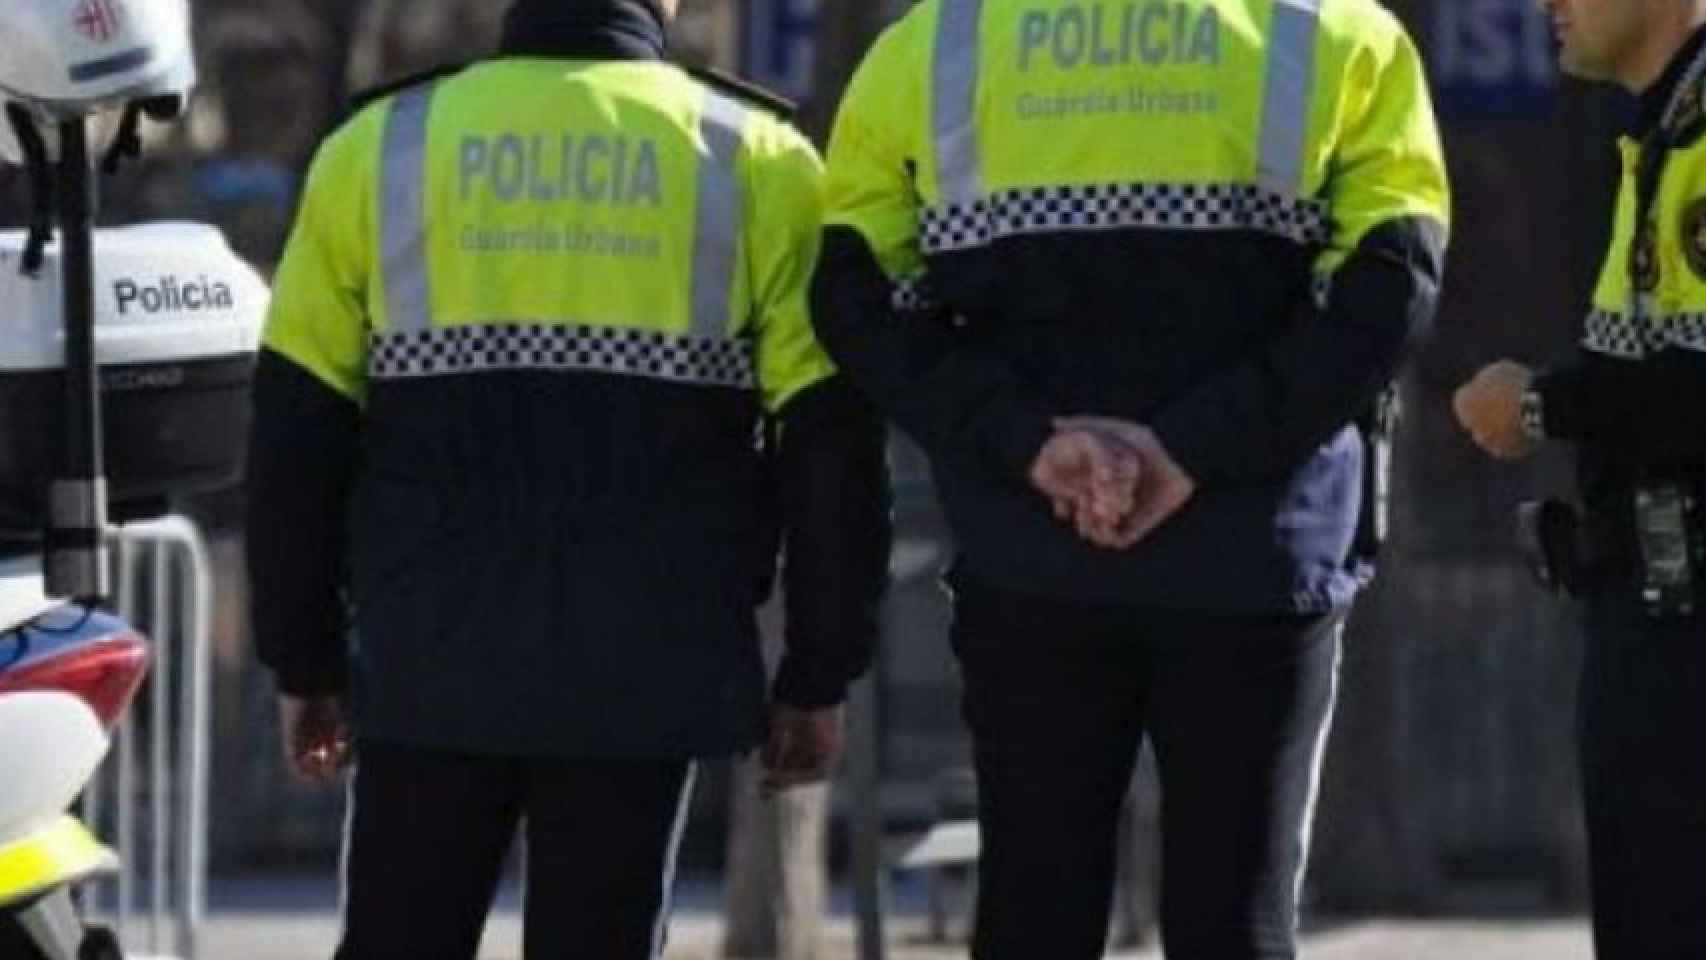 Agentes de la Guàrdia Urbana patrullando por Barcelona